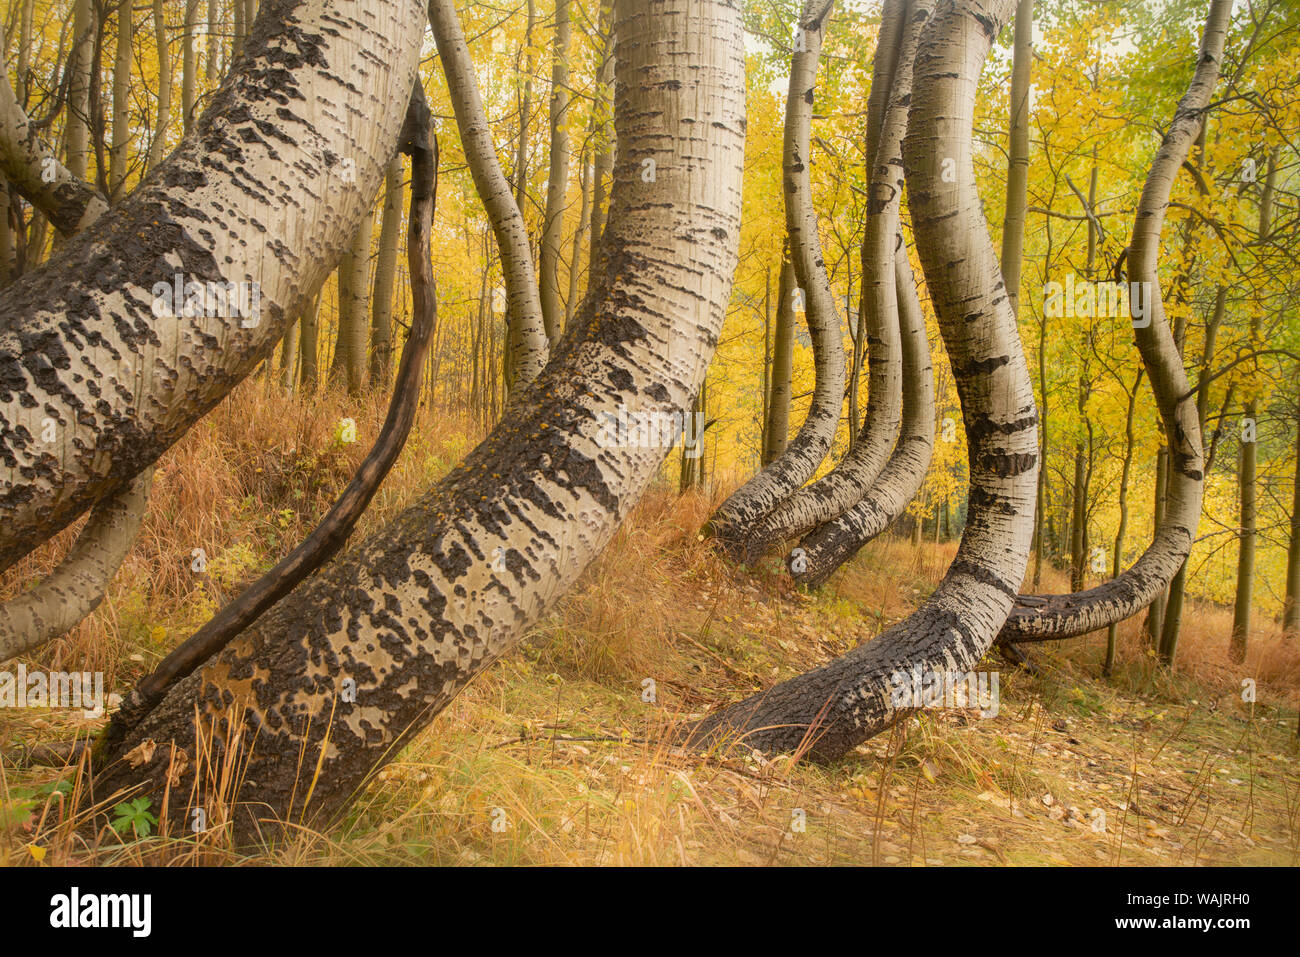 Stati Uniti d'America, Colorado, Uncompahgre National Forest. Deformato aspen tronchi nella foresta. Credito come: Don Grall Jaynes / Galleria / DanitaDelimont.com Foto Stock